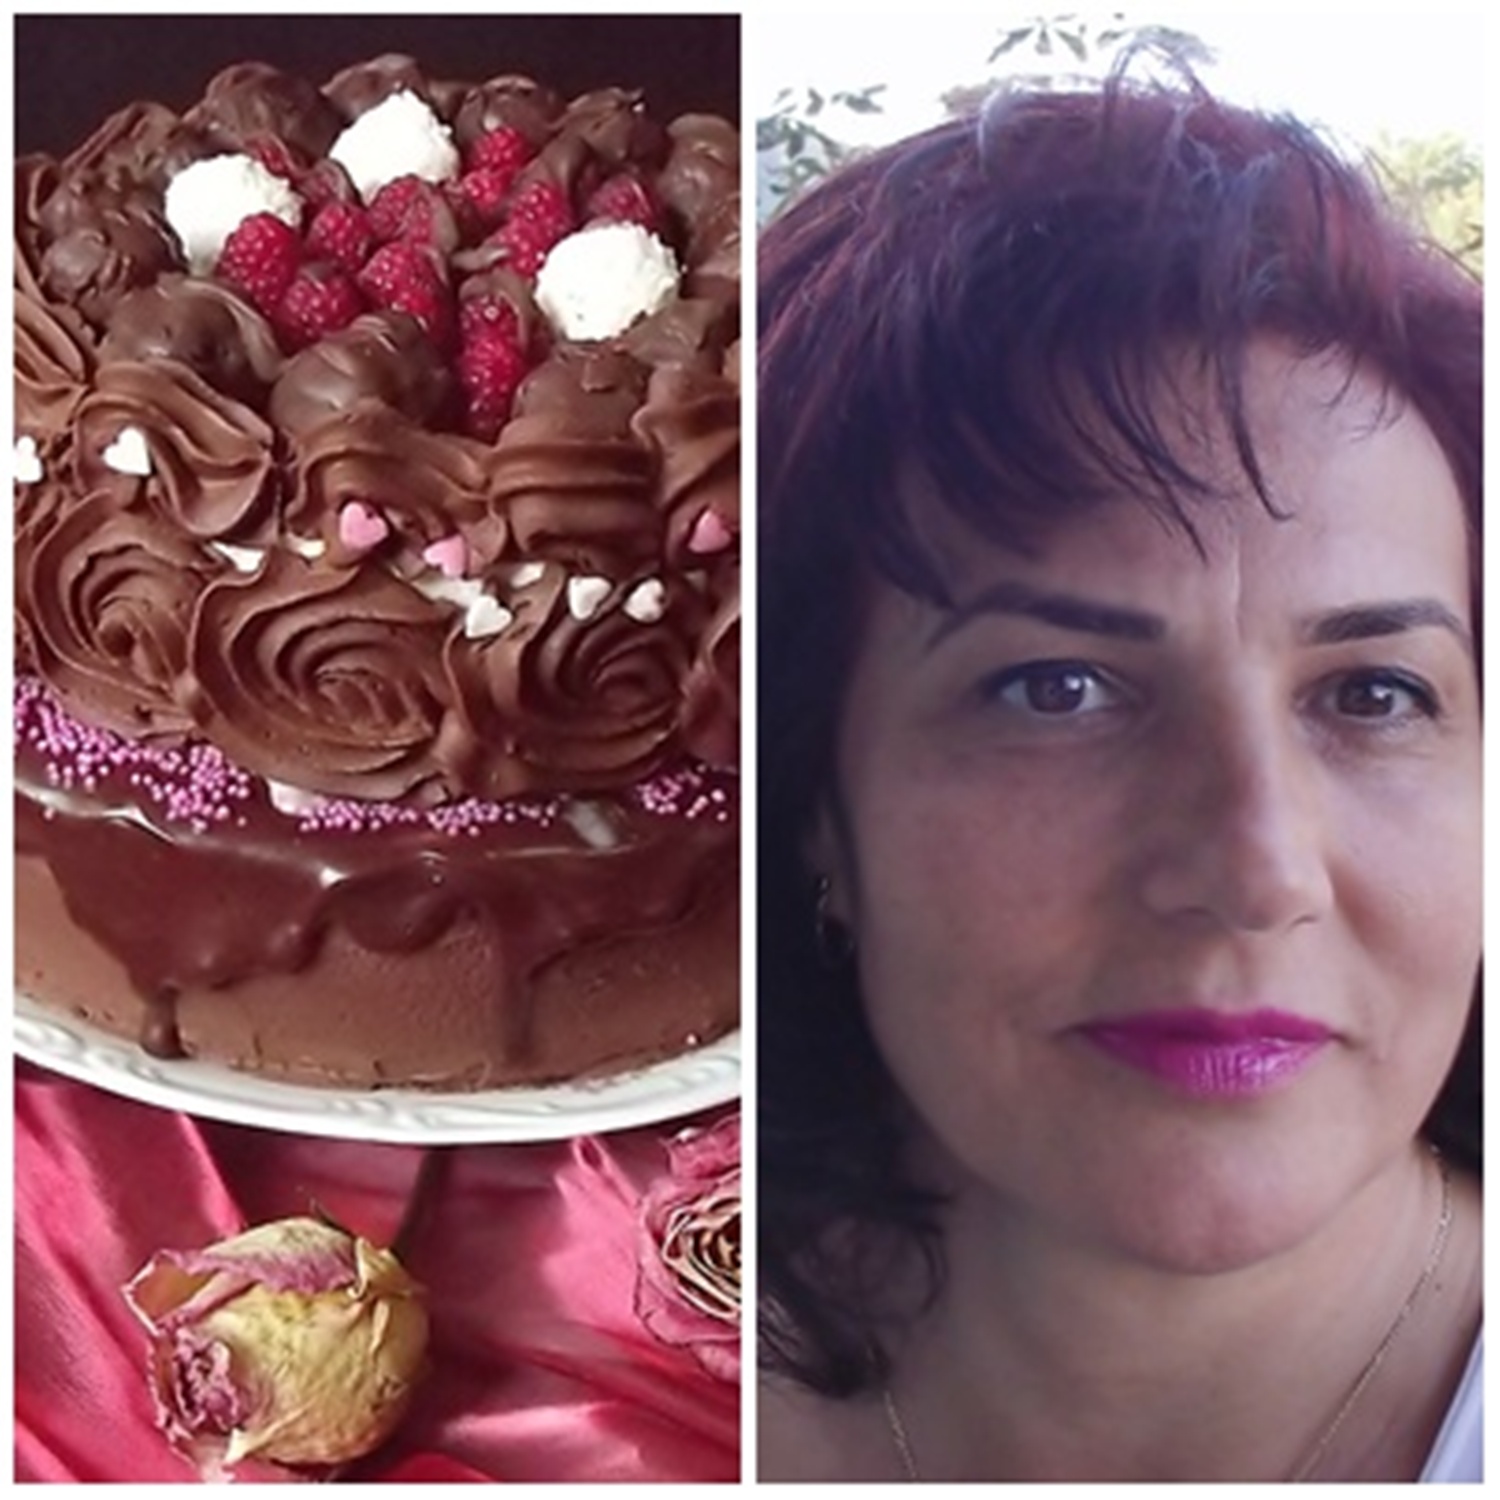 Tort aniversar cu zmeură şi ciocolată